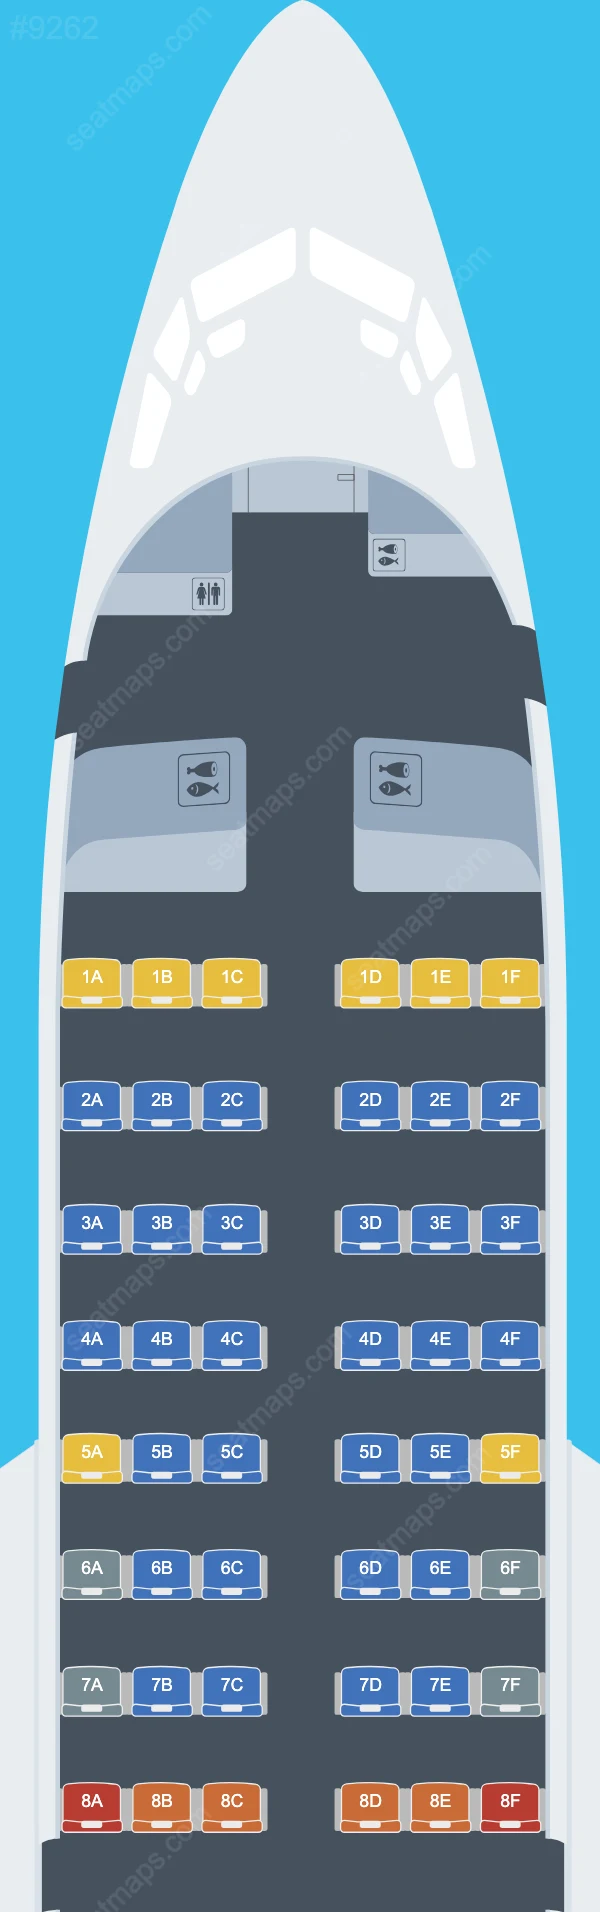 Badr Airlines Boeing 737 Plan de Salle 737-500